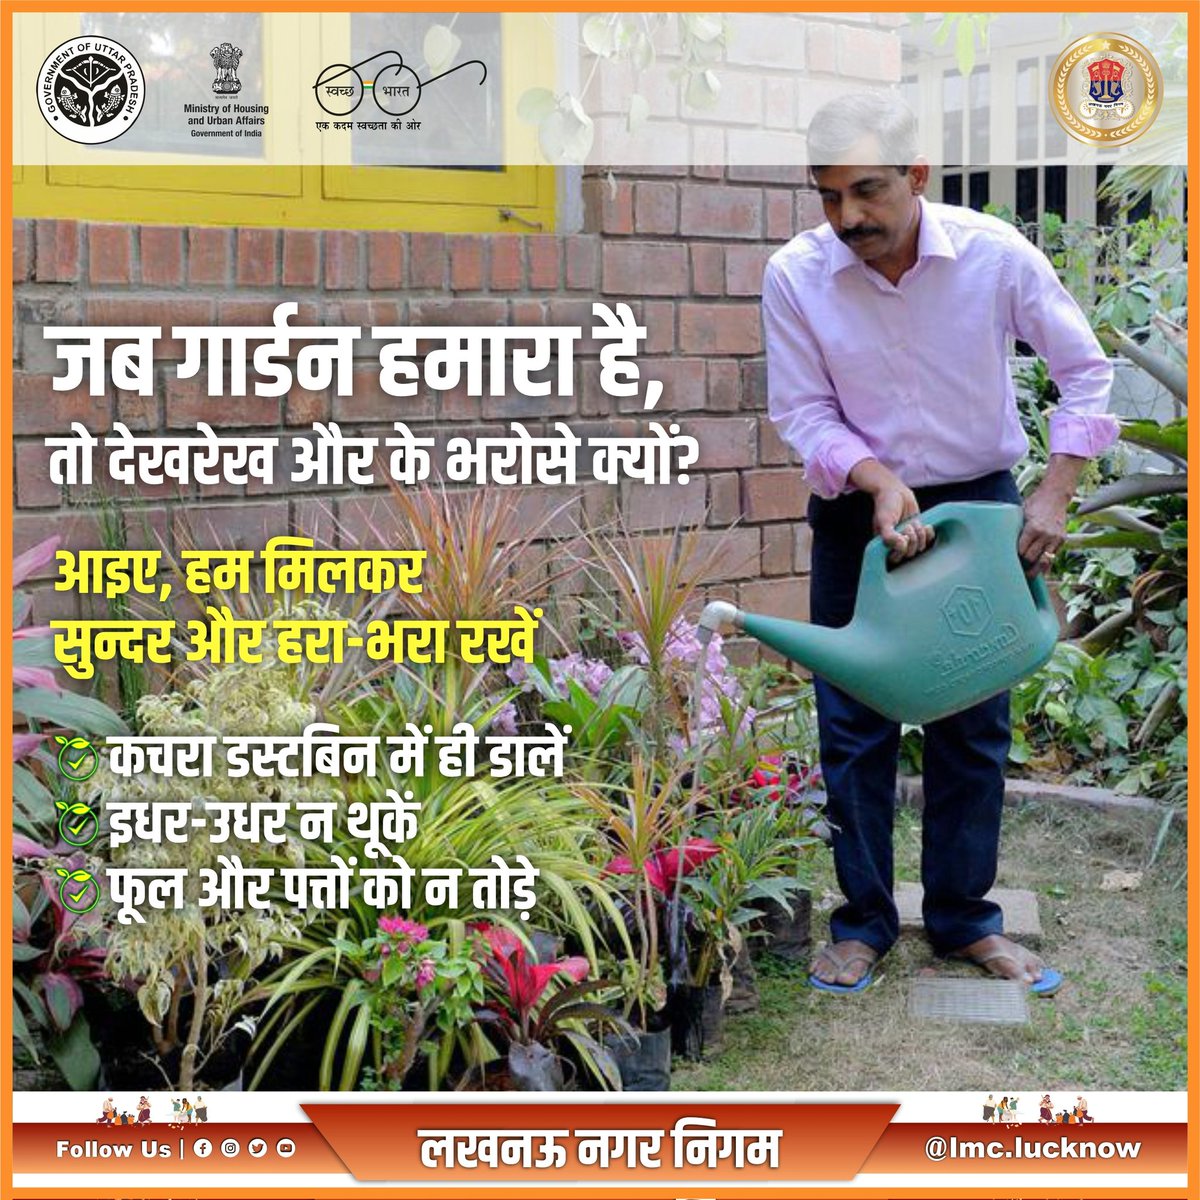 जब गार्डन हमारा है, 🍂🍃🍁 तो देखरेख और के भरोसे क्यों? आइए, हम मिलकर सुन्दर और हरा-भरा रखें • कचरा डस्टबिन में ही डालें • इधर-उधर न थूकें • फूल और पत्तों को न तोड़े #greenlucknow #नगर_निगम_लखनऊ #स्वच्छता_परमोधर्म @SBM_UP @SwachhBharatGov @NagarVikas_UP @UPGovt